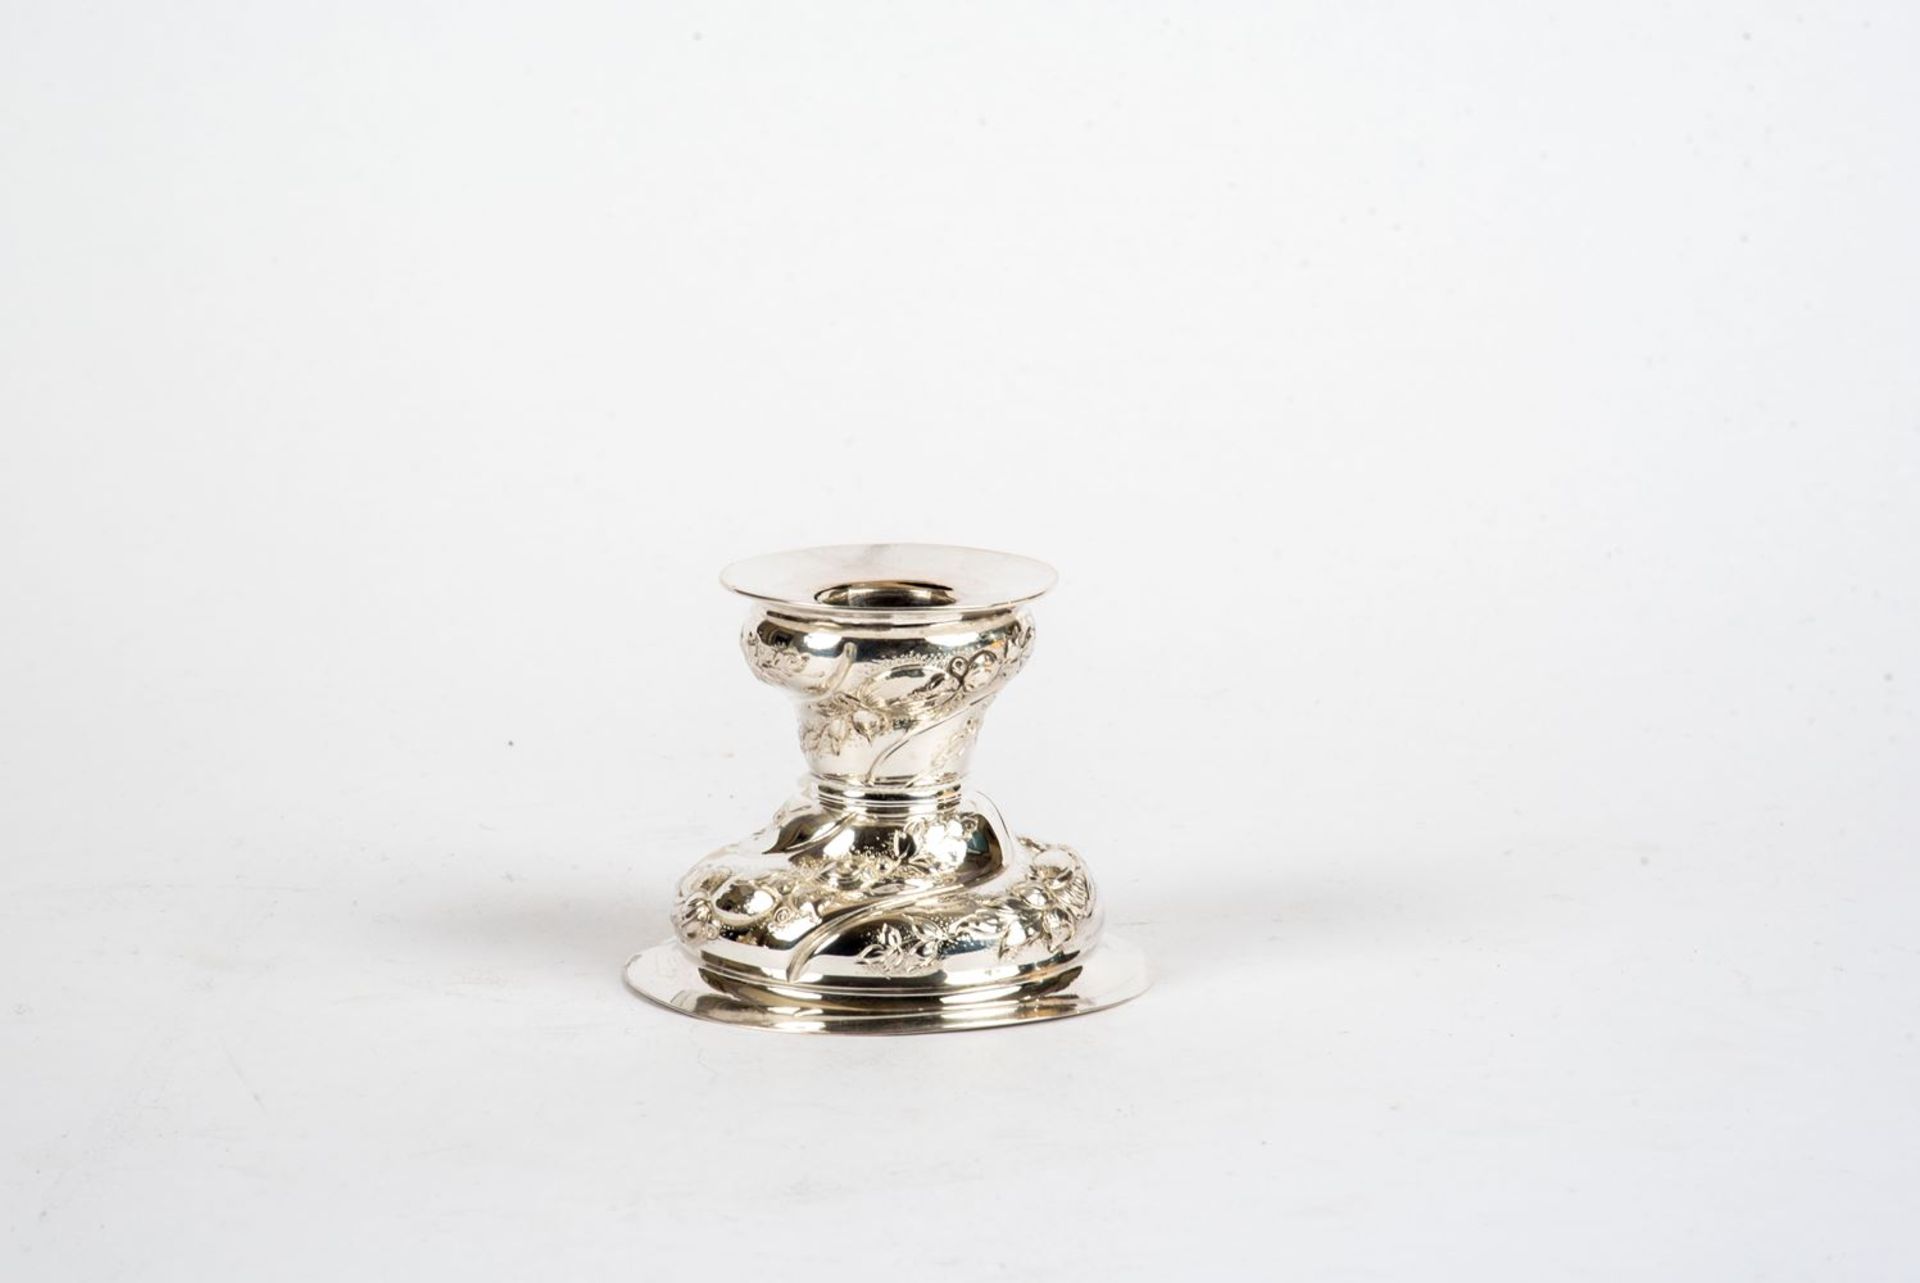 Tischleuchter800er Silber. Glockenförmiger Fuß mit vertikaler Blütenbordüre in den Leuchterschaft